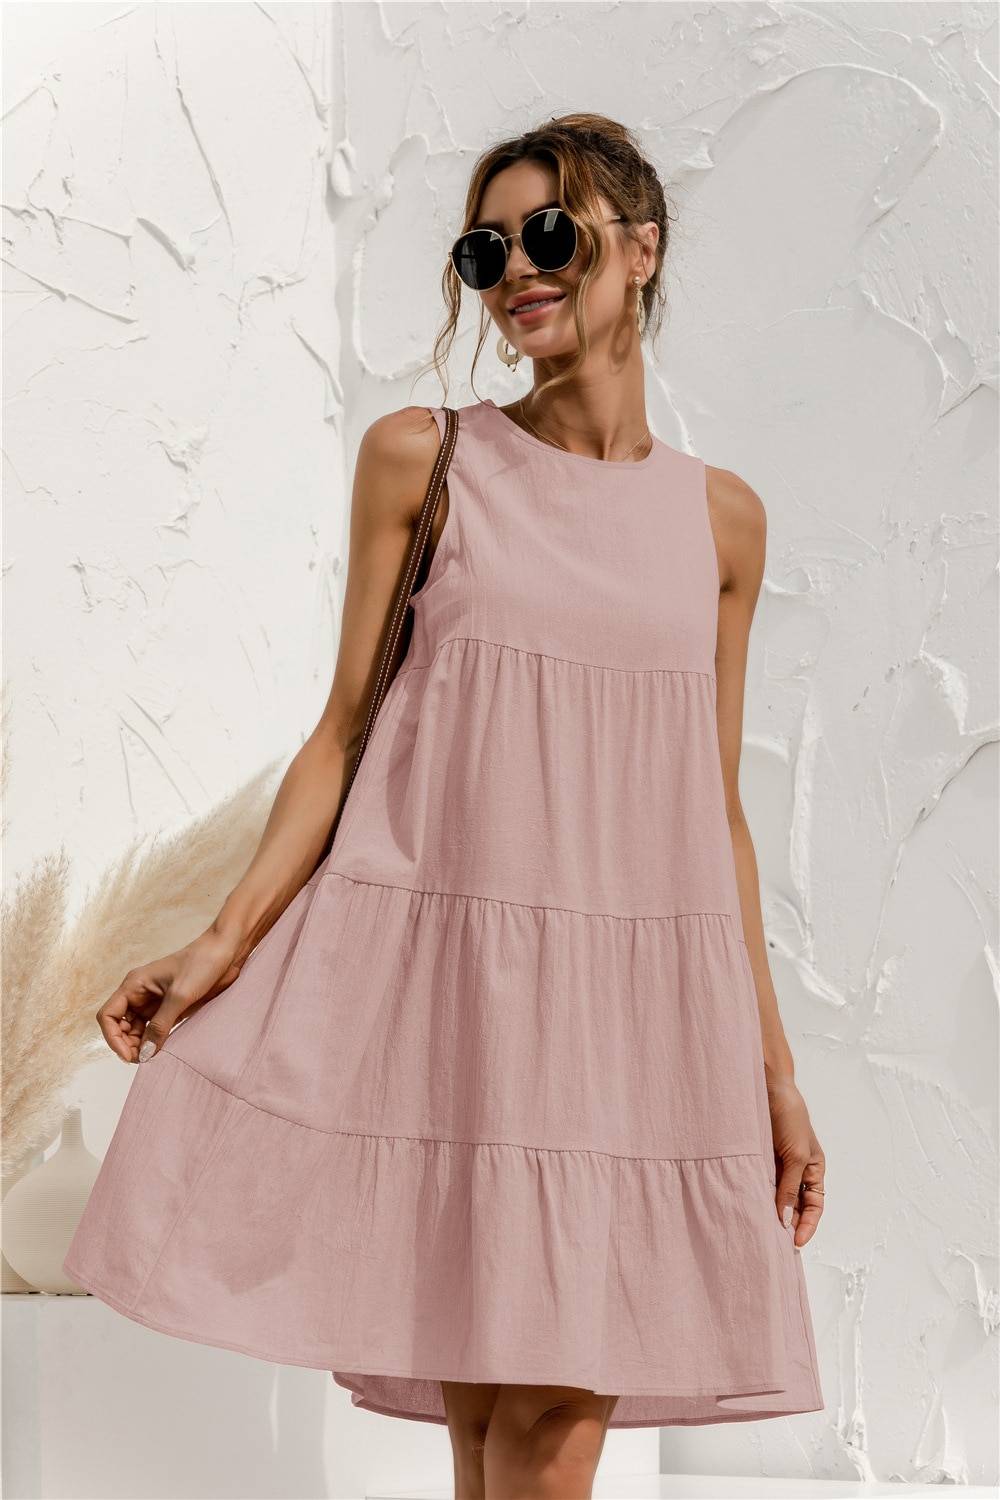 Summer Sleeveless Dress - All Dresses - Dresses - 13 - 2024